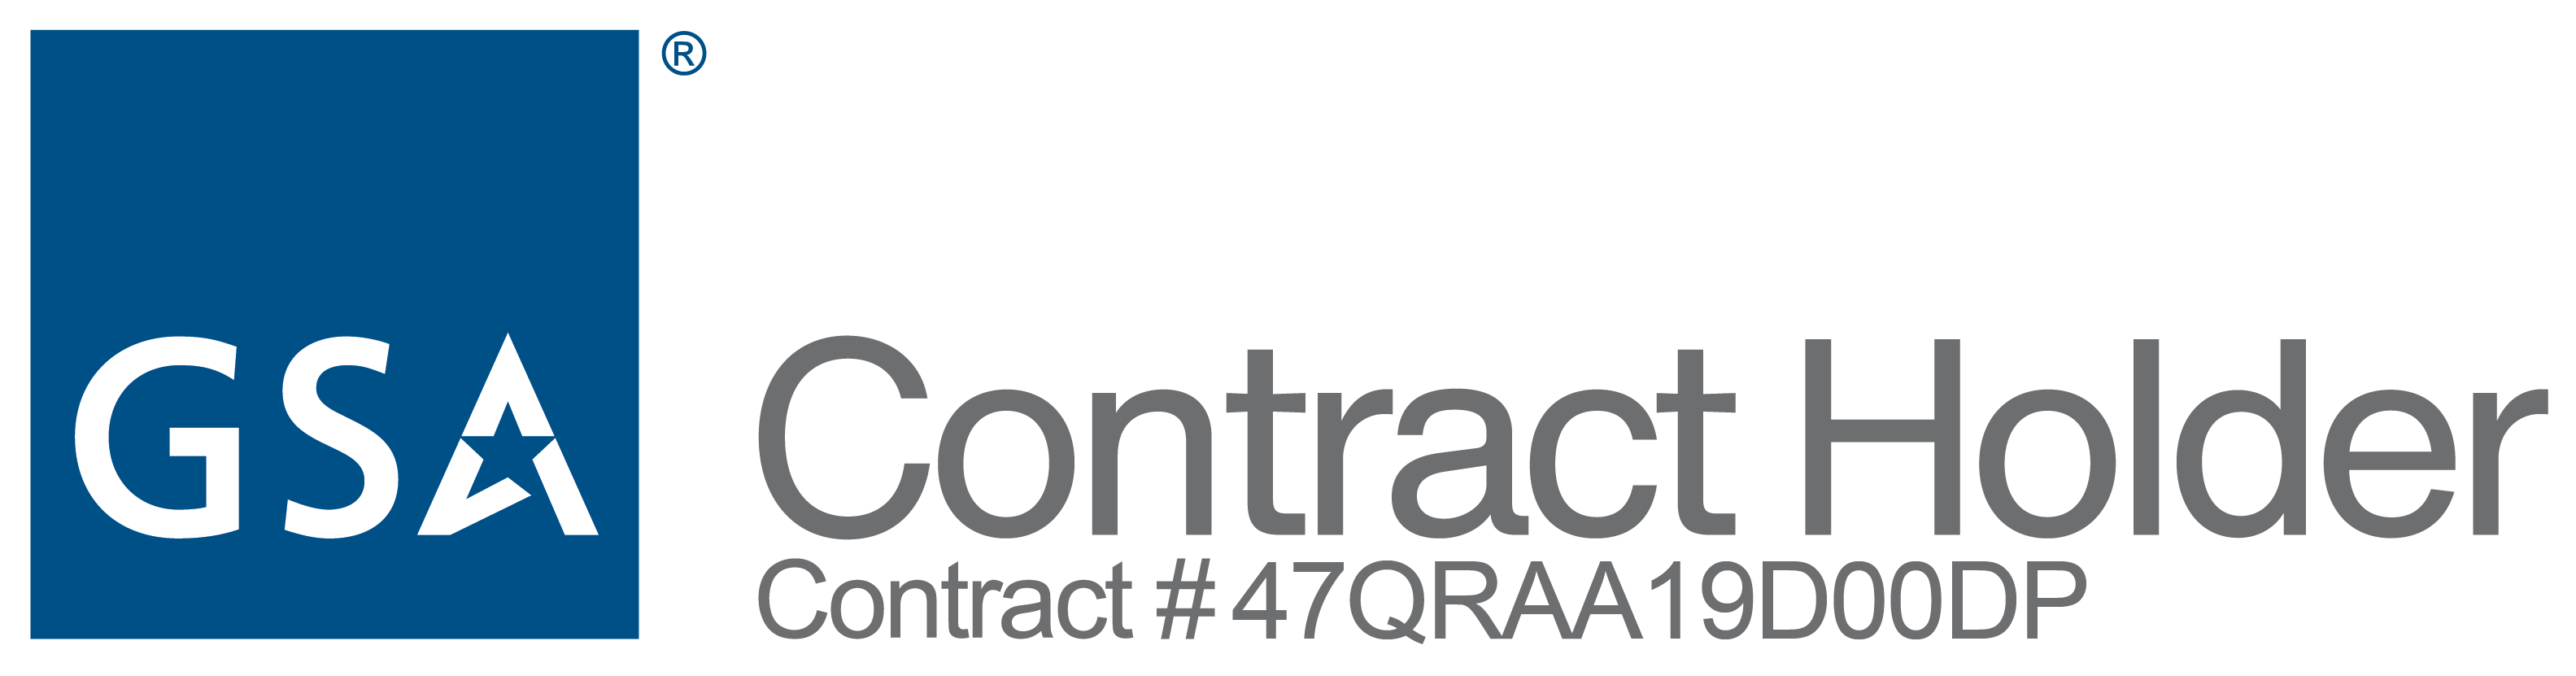 GSA Contract Holder Contract #47QRAA19D00DP